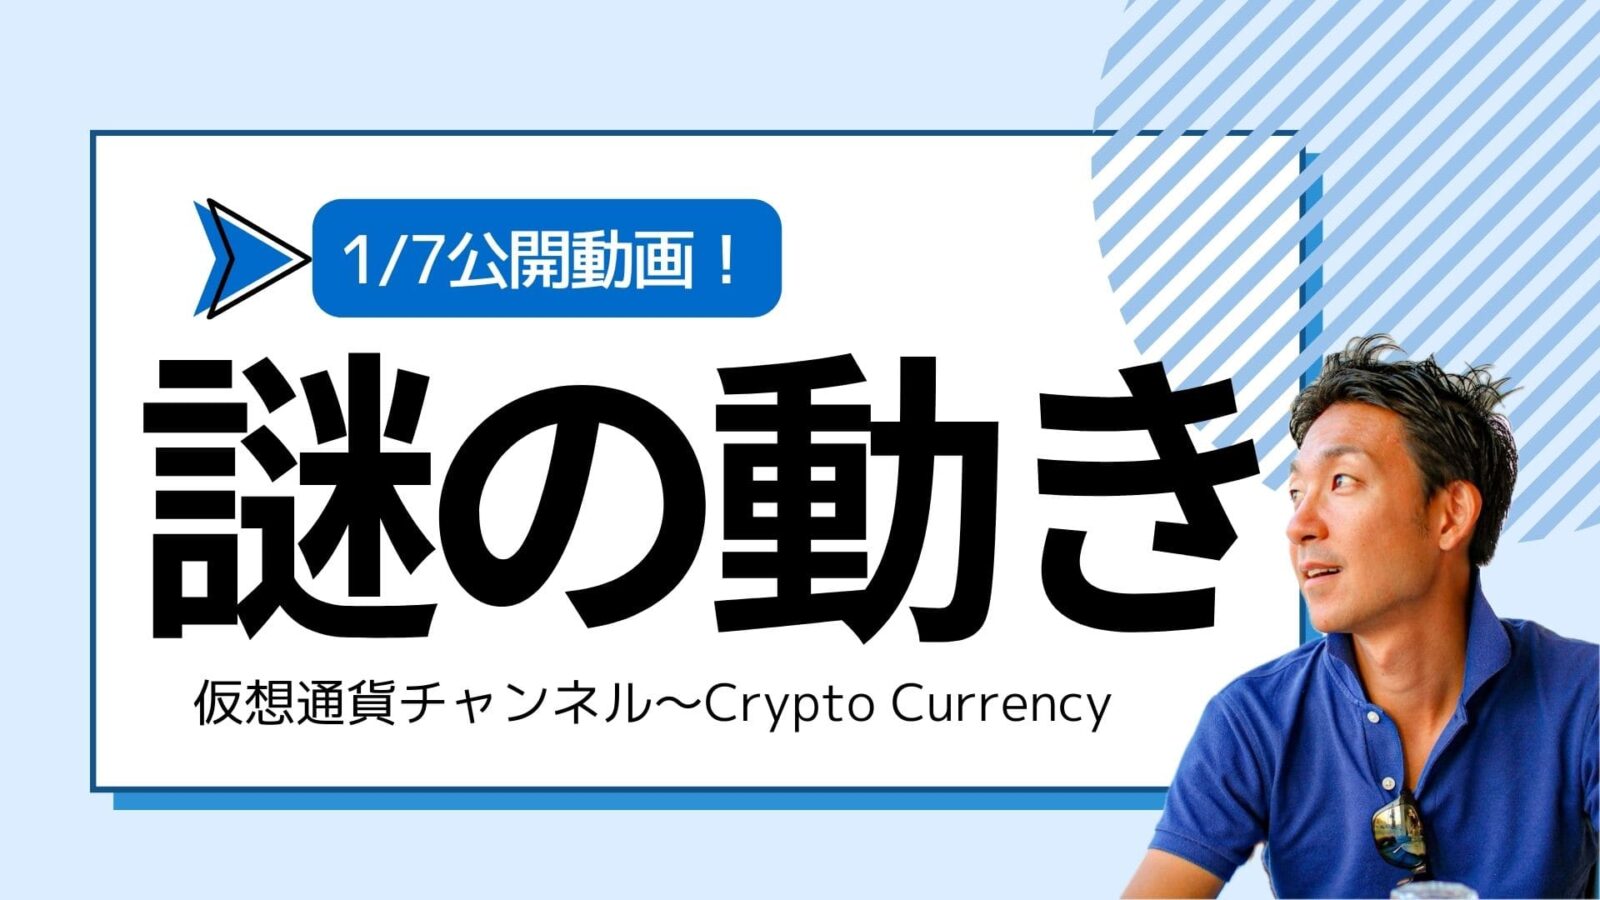 【仮想通貨チャンネル】Joe Takayamaさんが語る『ビットコインに謎の動き。ETFは承認すべきではない？』1/7公開